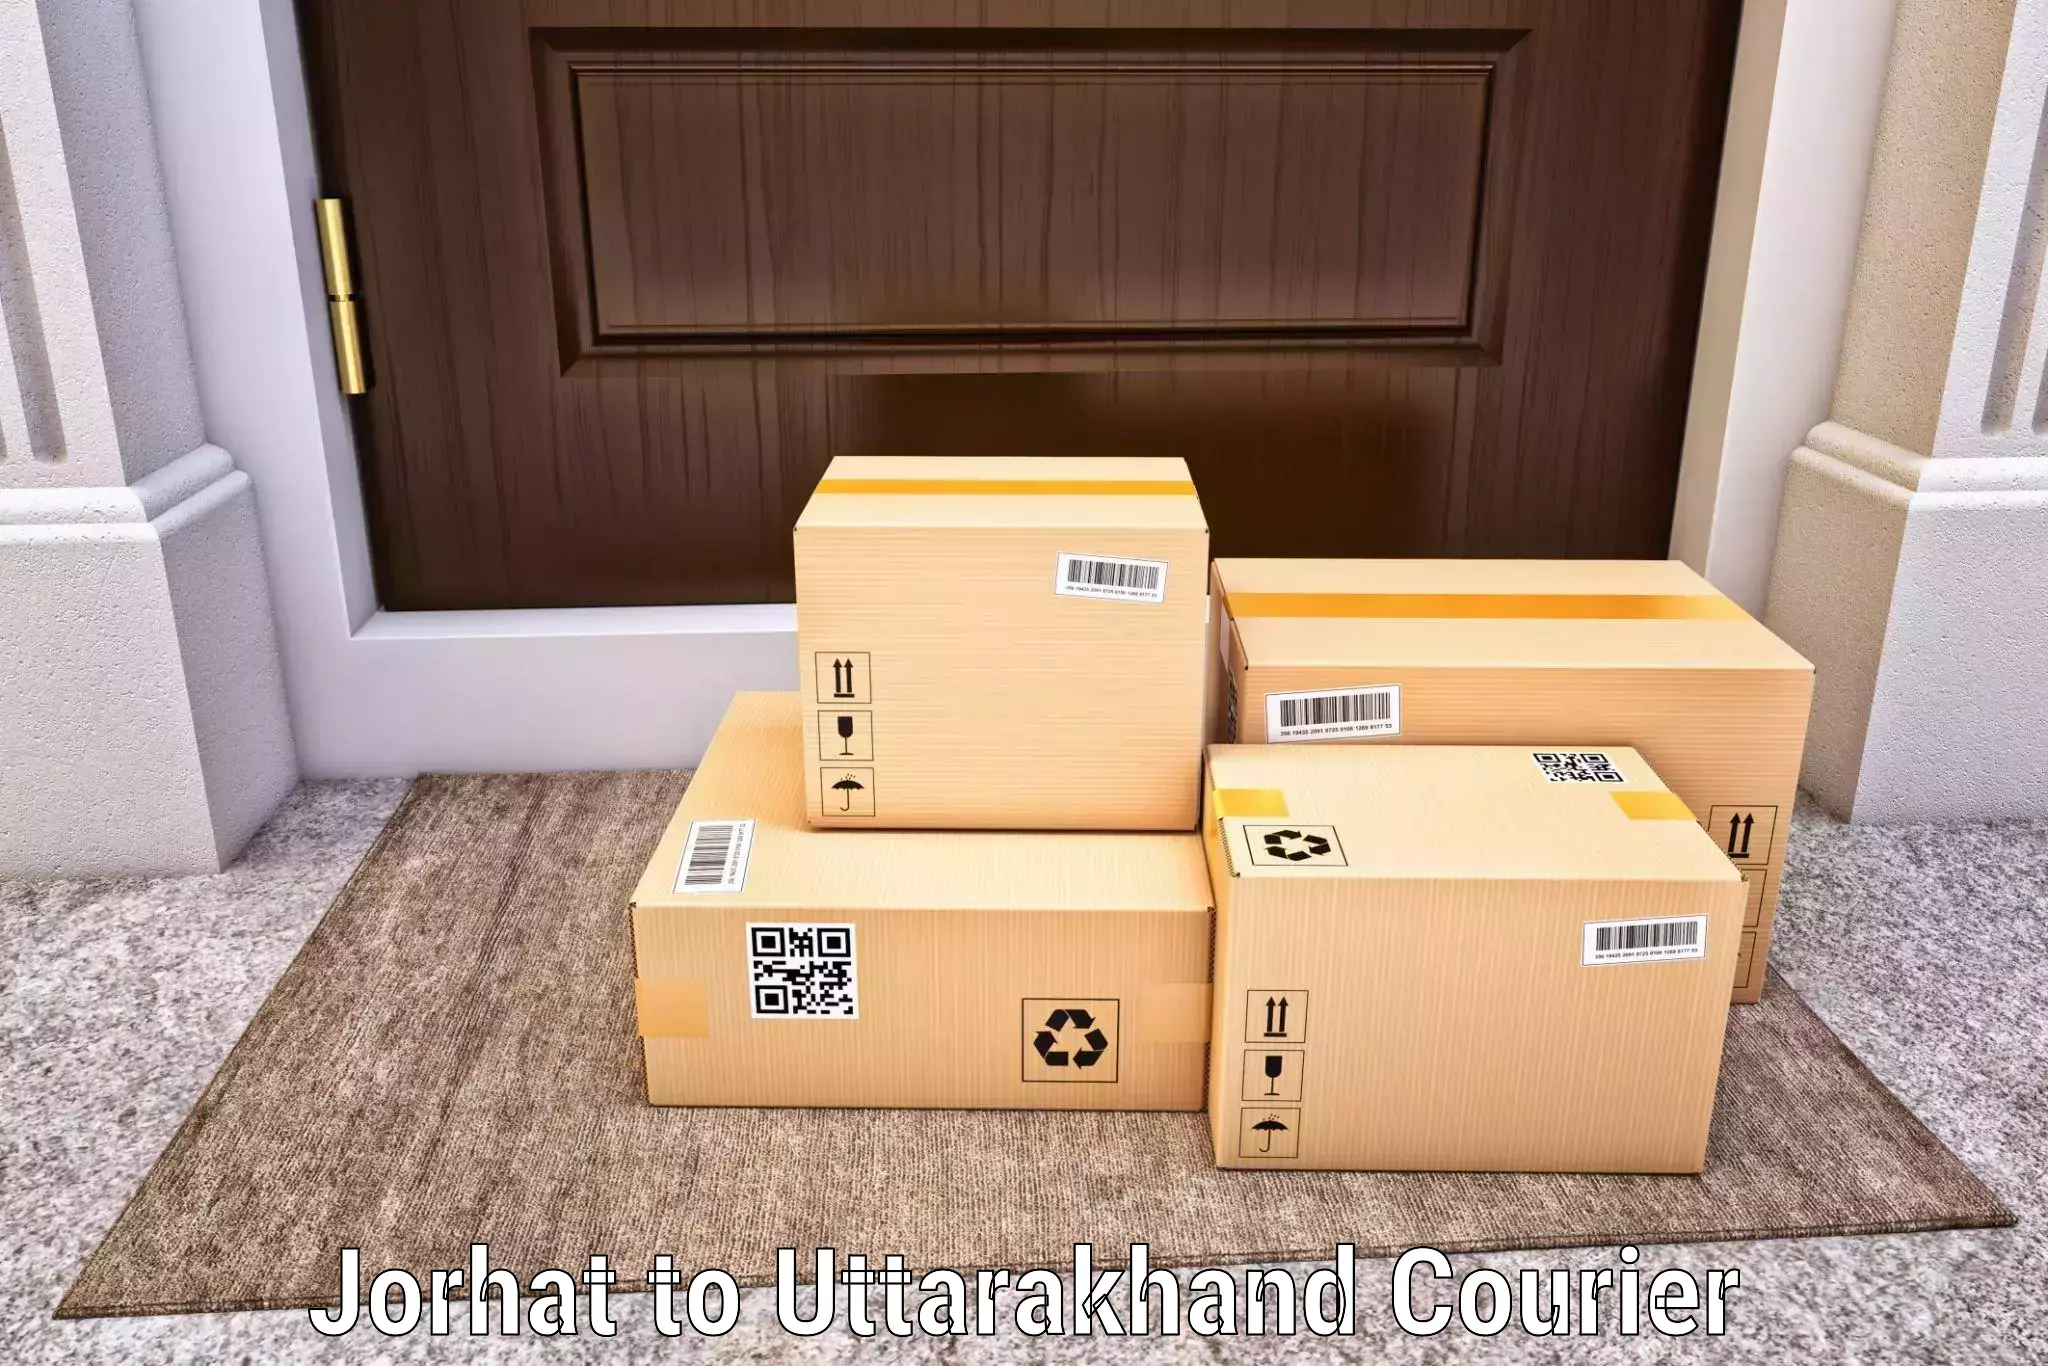 Affordable shipping rates Jorhat to Gopeshwar